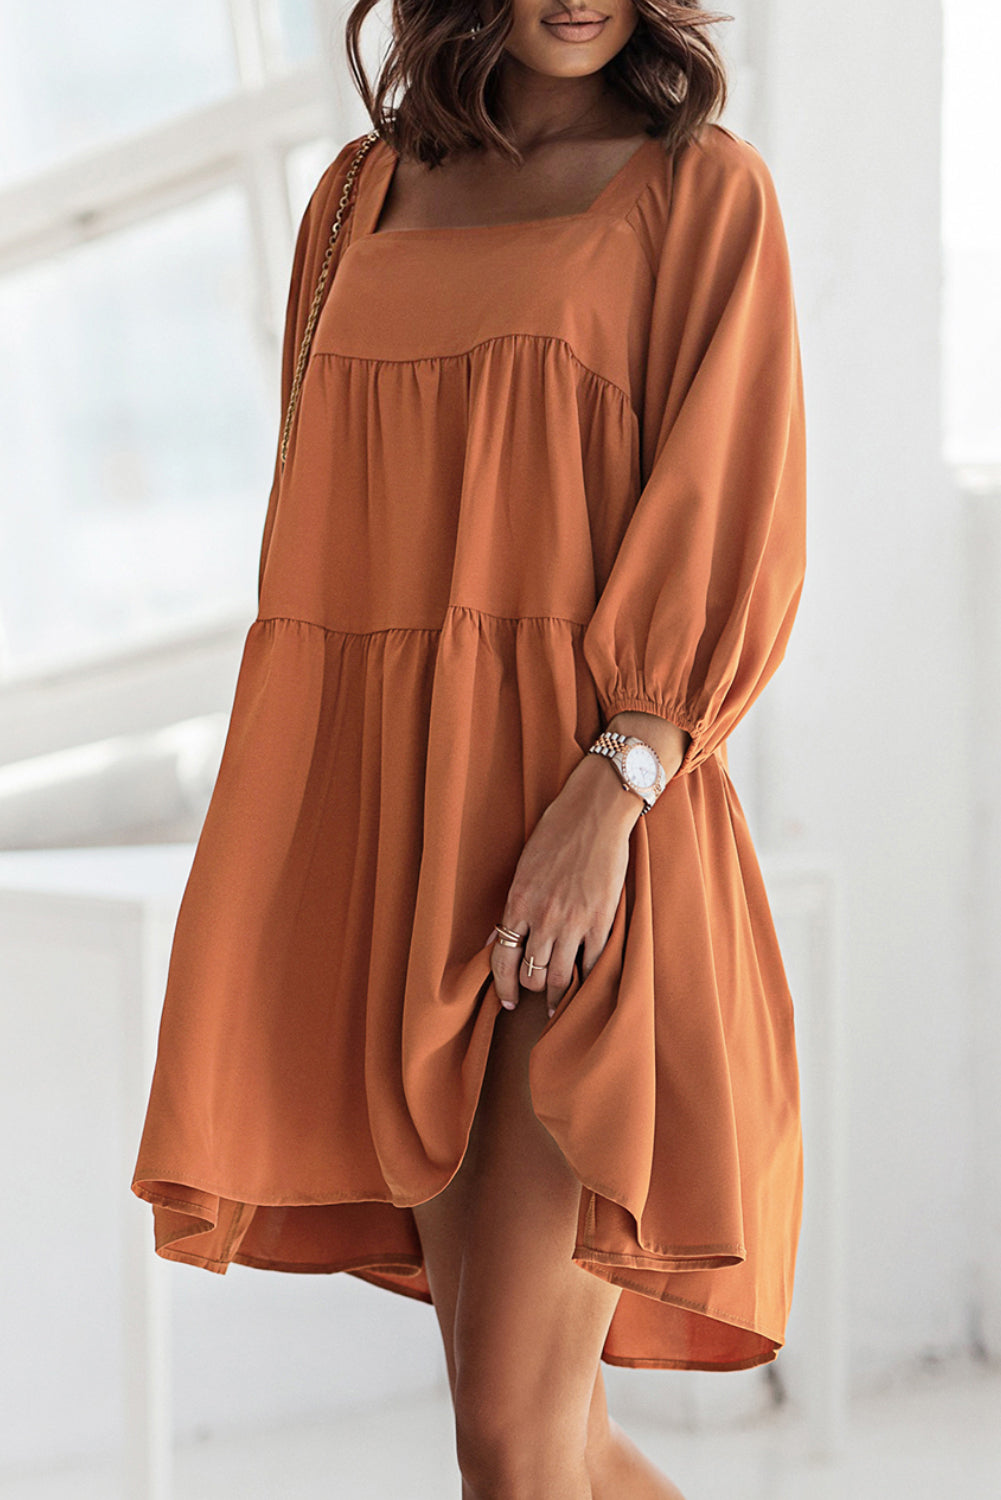 Mini-robe marron à col carré, demi-manches, haute et basse